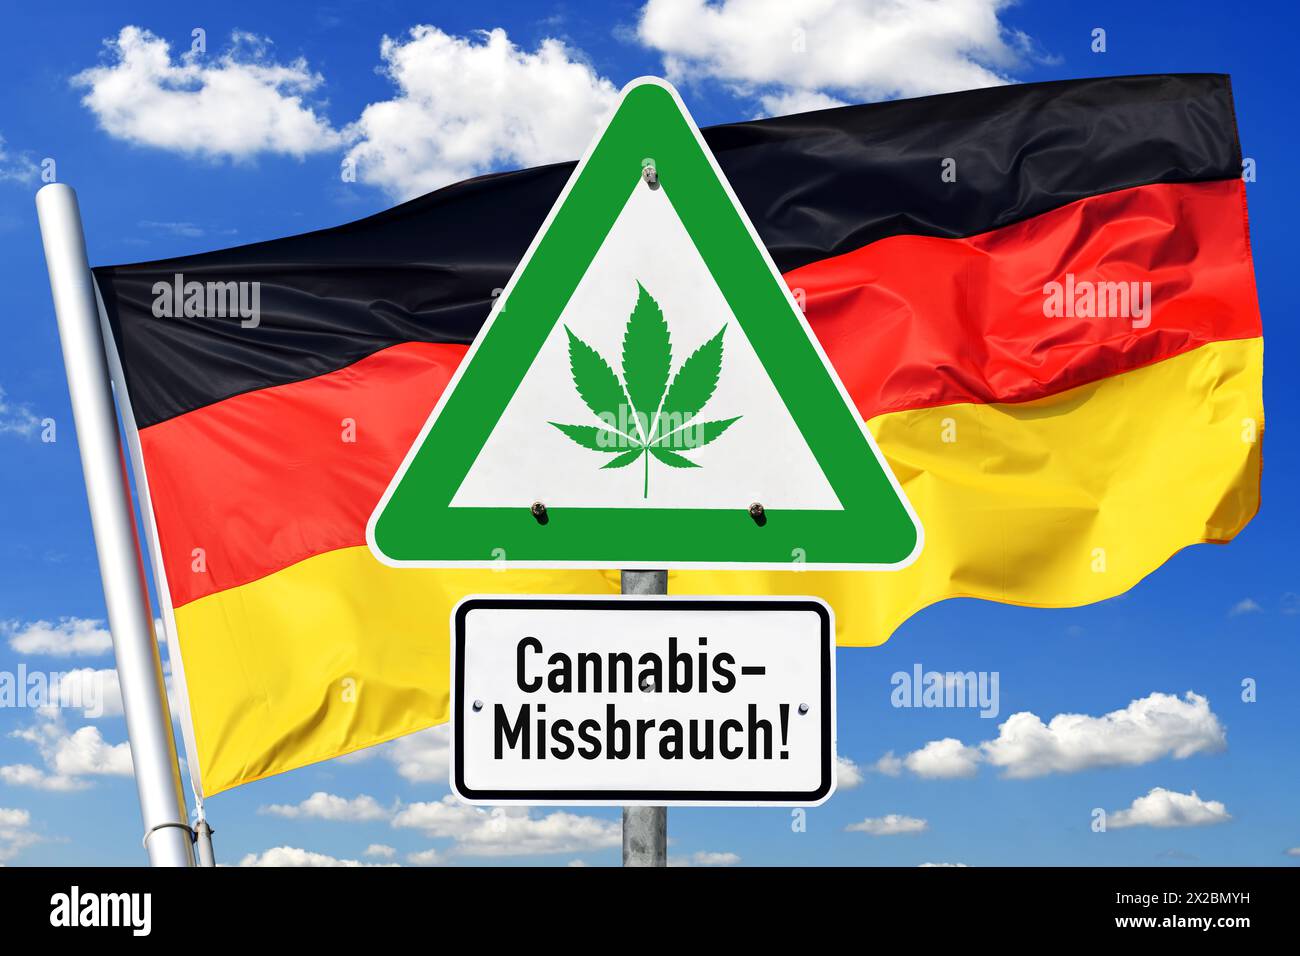 Panneau avec feuille de cannabis et inscription cannabis Abuse devant le drapeau allemand, photomontage Banque D'Images